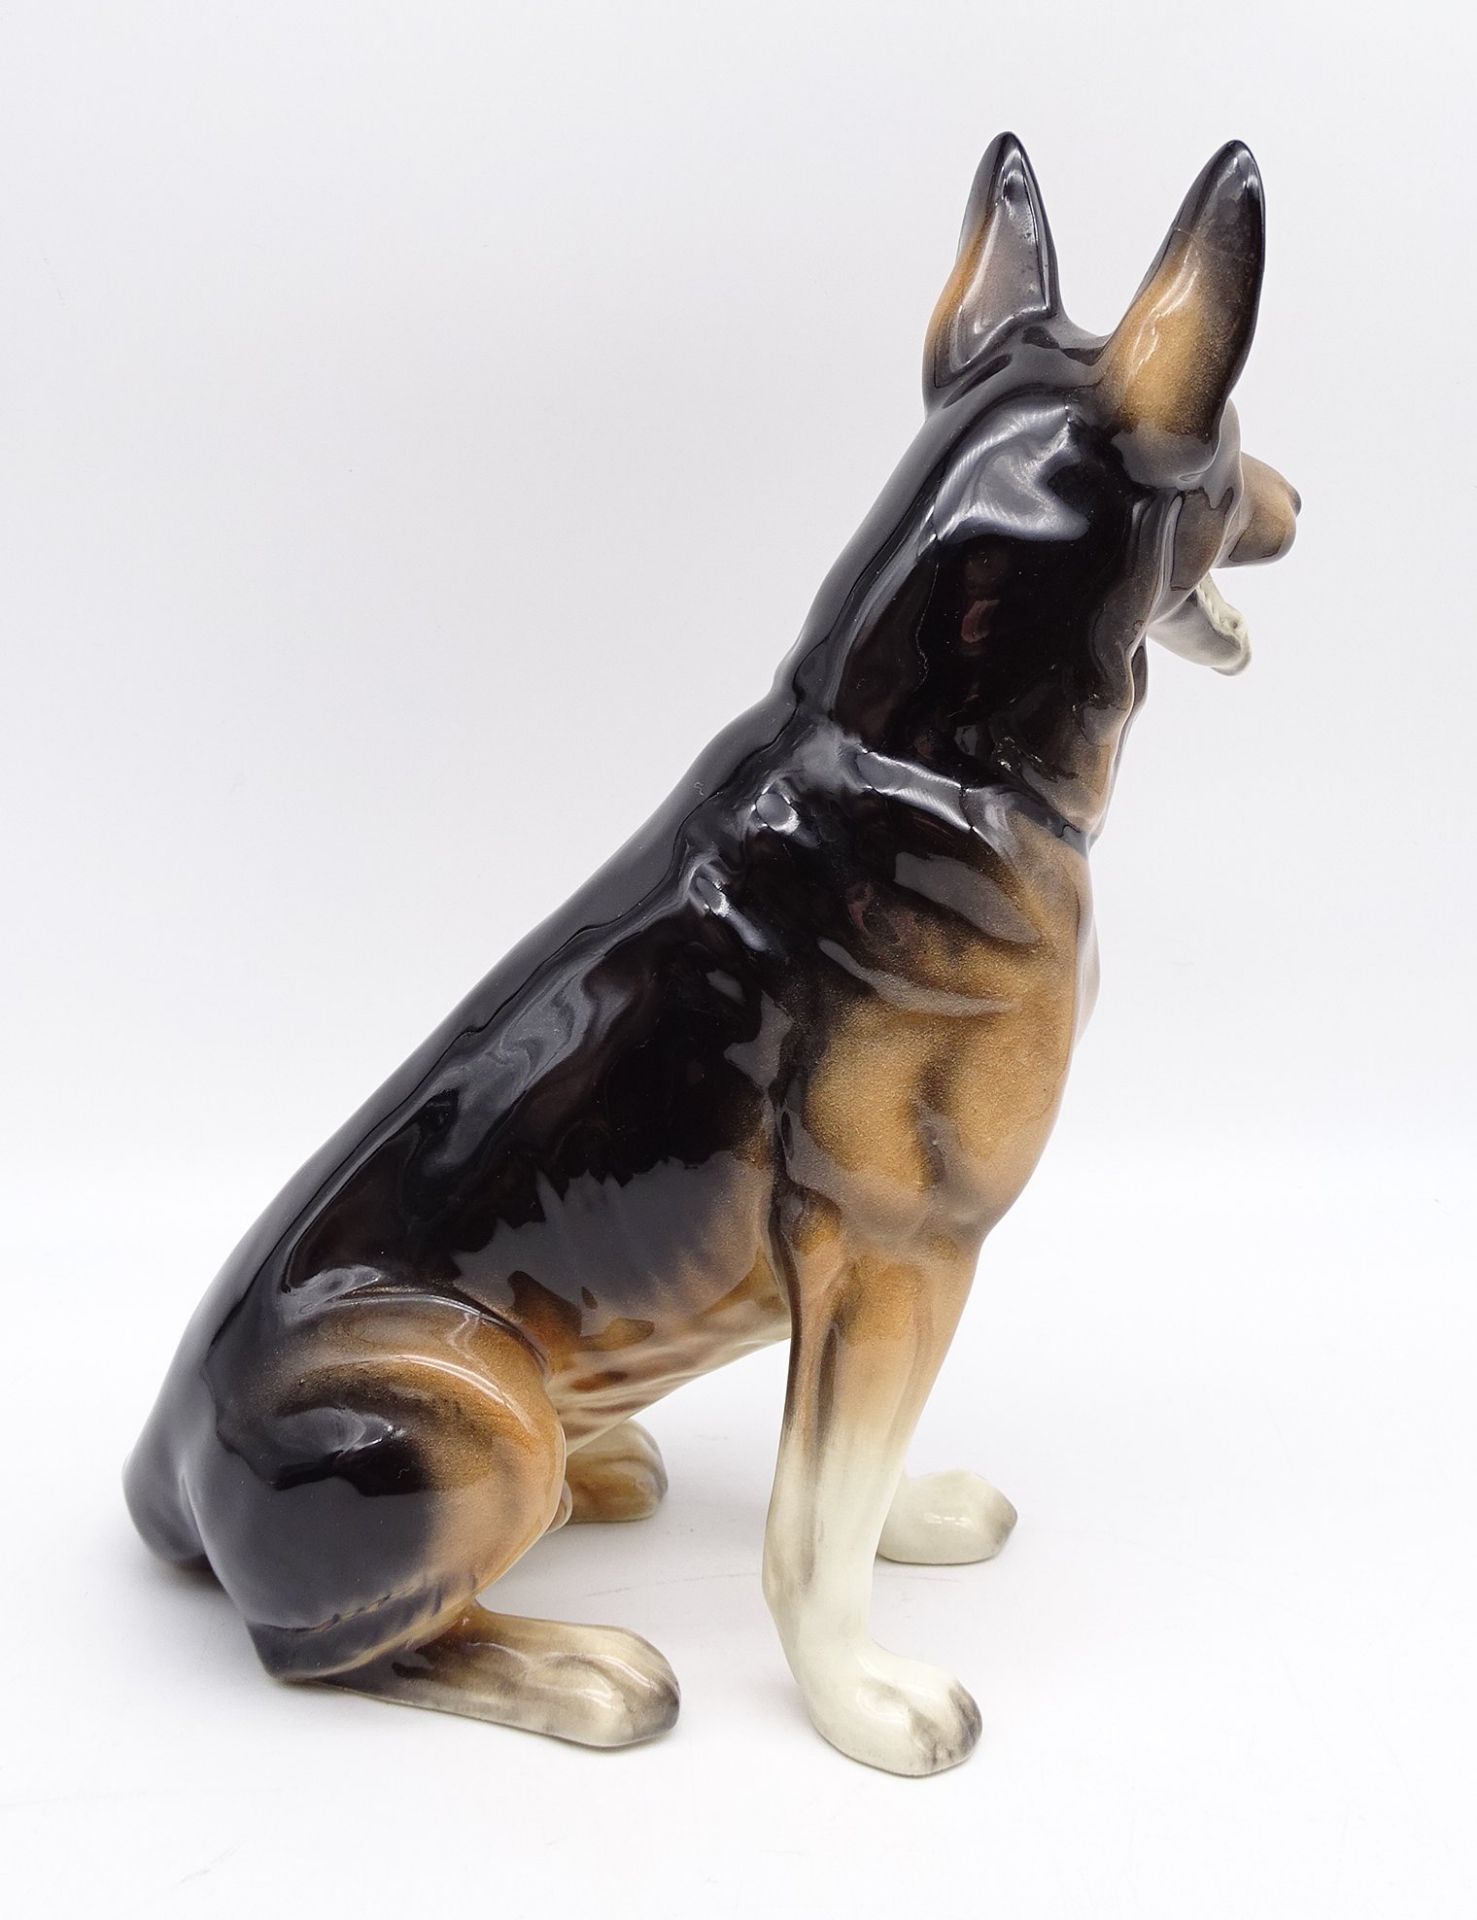 Figur eines Schäferhundes, nummeriert, "Made in Germany", H. 28,5 cm, mit Altersspuren, ein Ohr gek - Bild 3 aus 7